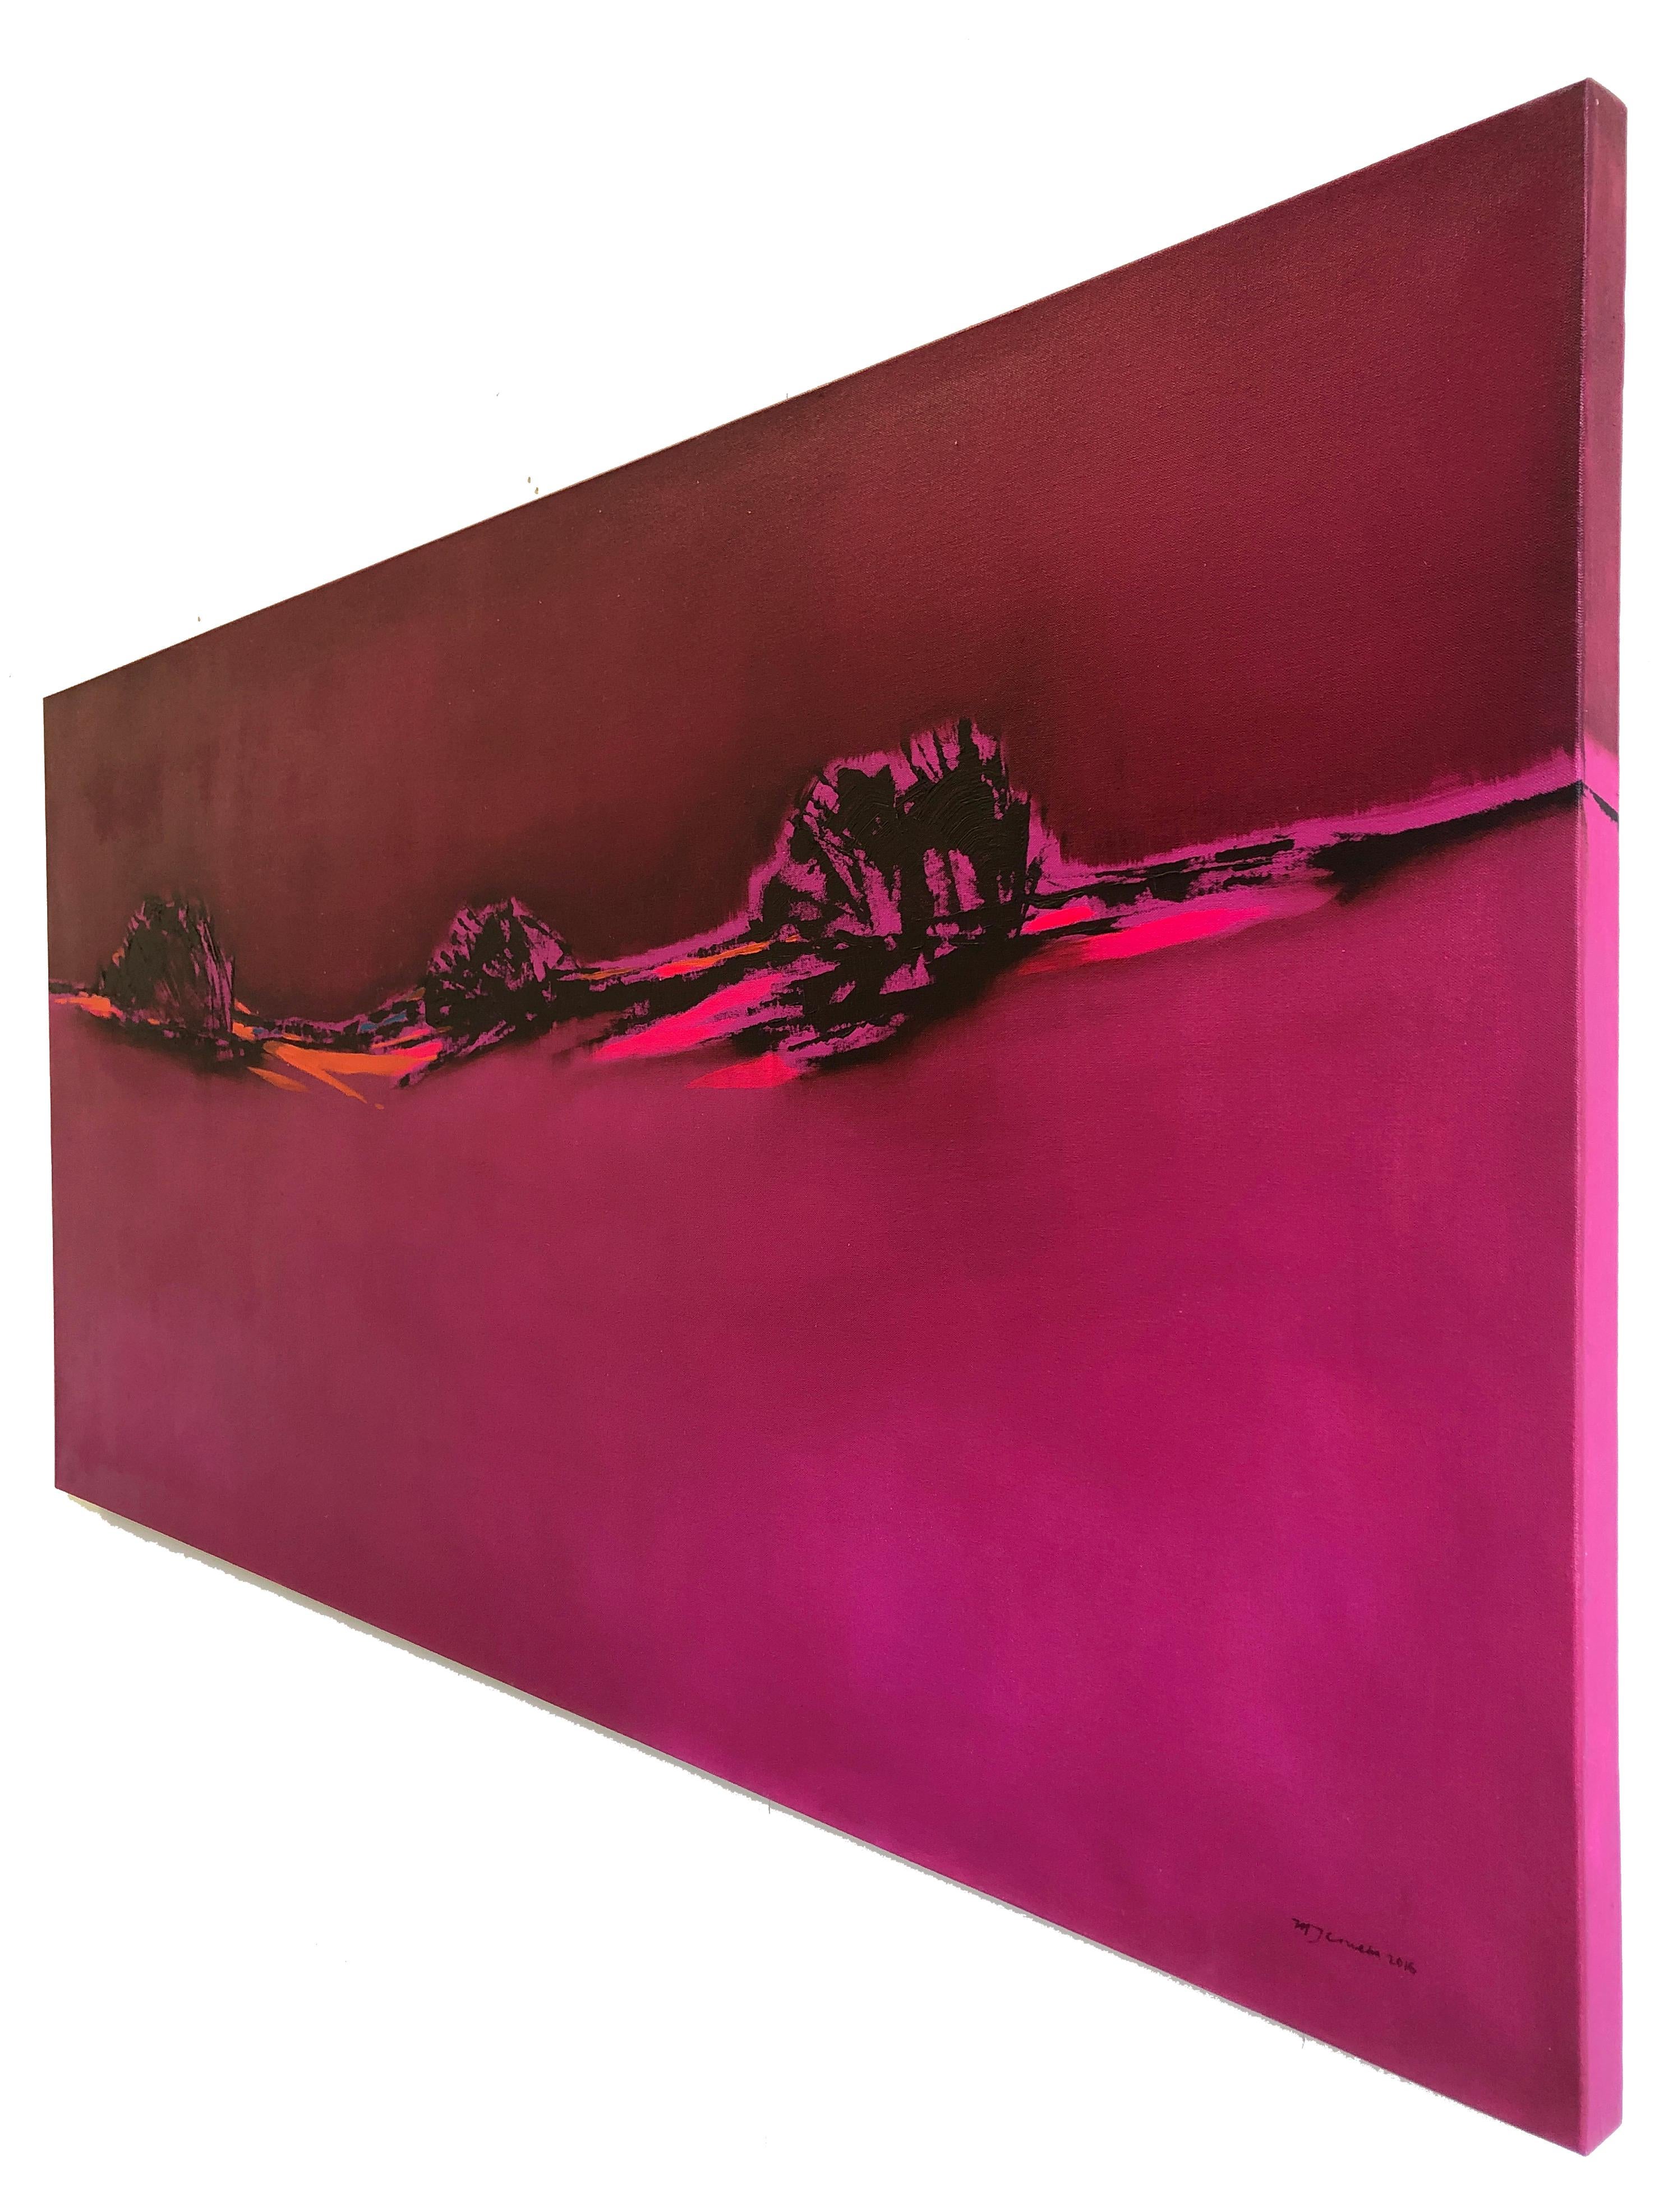 Rosa Blazing - Hommage an Patagonien, abstrakte Landschaft in leuchtenden, kräftigen Farben (Pink), Landscape Painting, von Maria Jose Concha